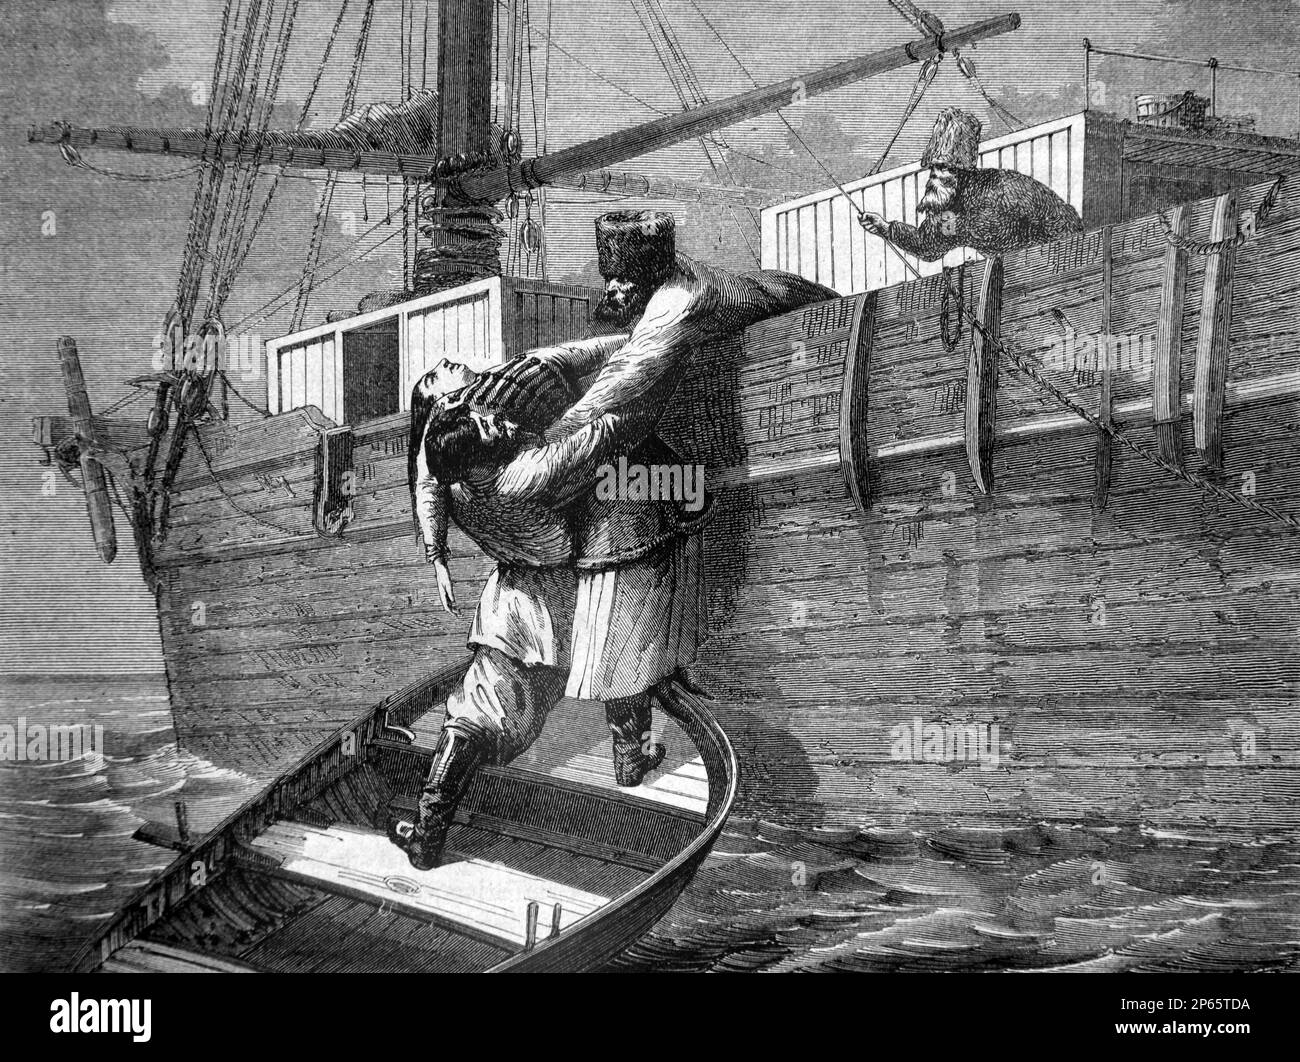 Marins russes sur un cargo en bois de sauvetage homme de mer Russie. Gravure ancienne ou illustration 1862 Banque D'Images